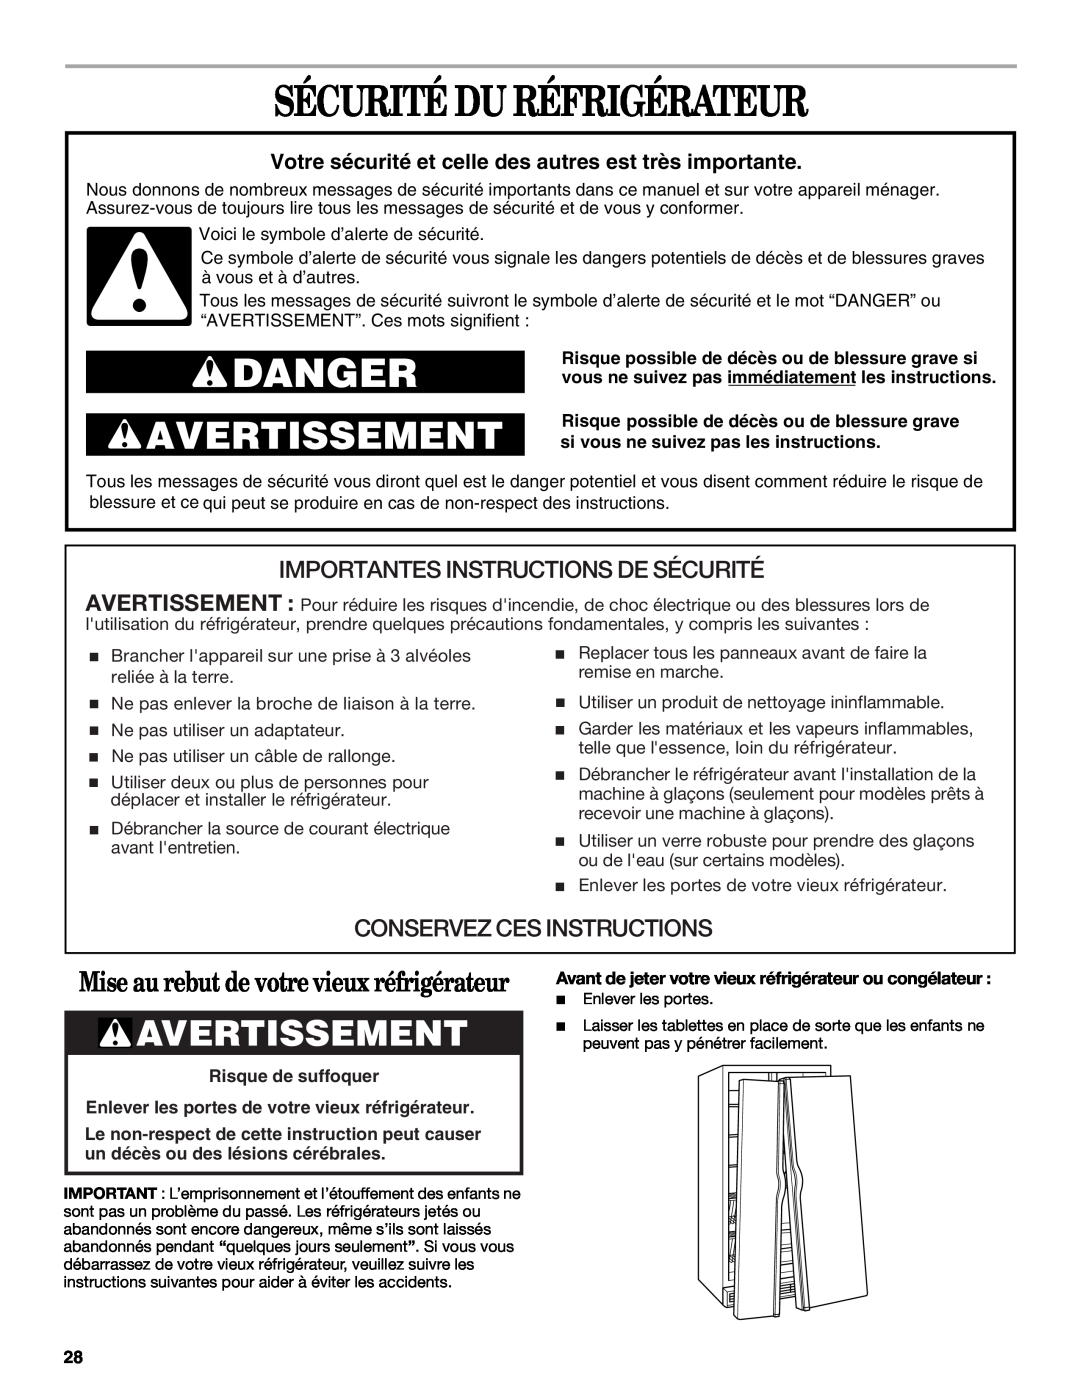 Whirlpool KTRC22EMWH02 manual Sécurité Du Réfrigérateur, Avertissement, Mise au rebut de votre vieux réfrigérateur, Danger 